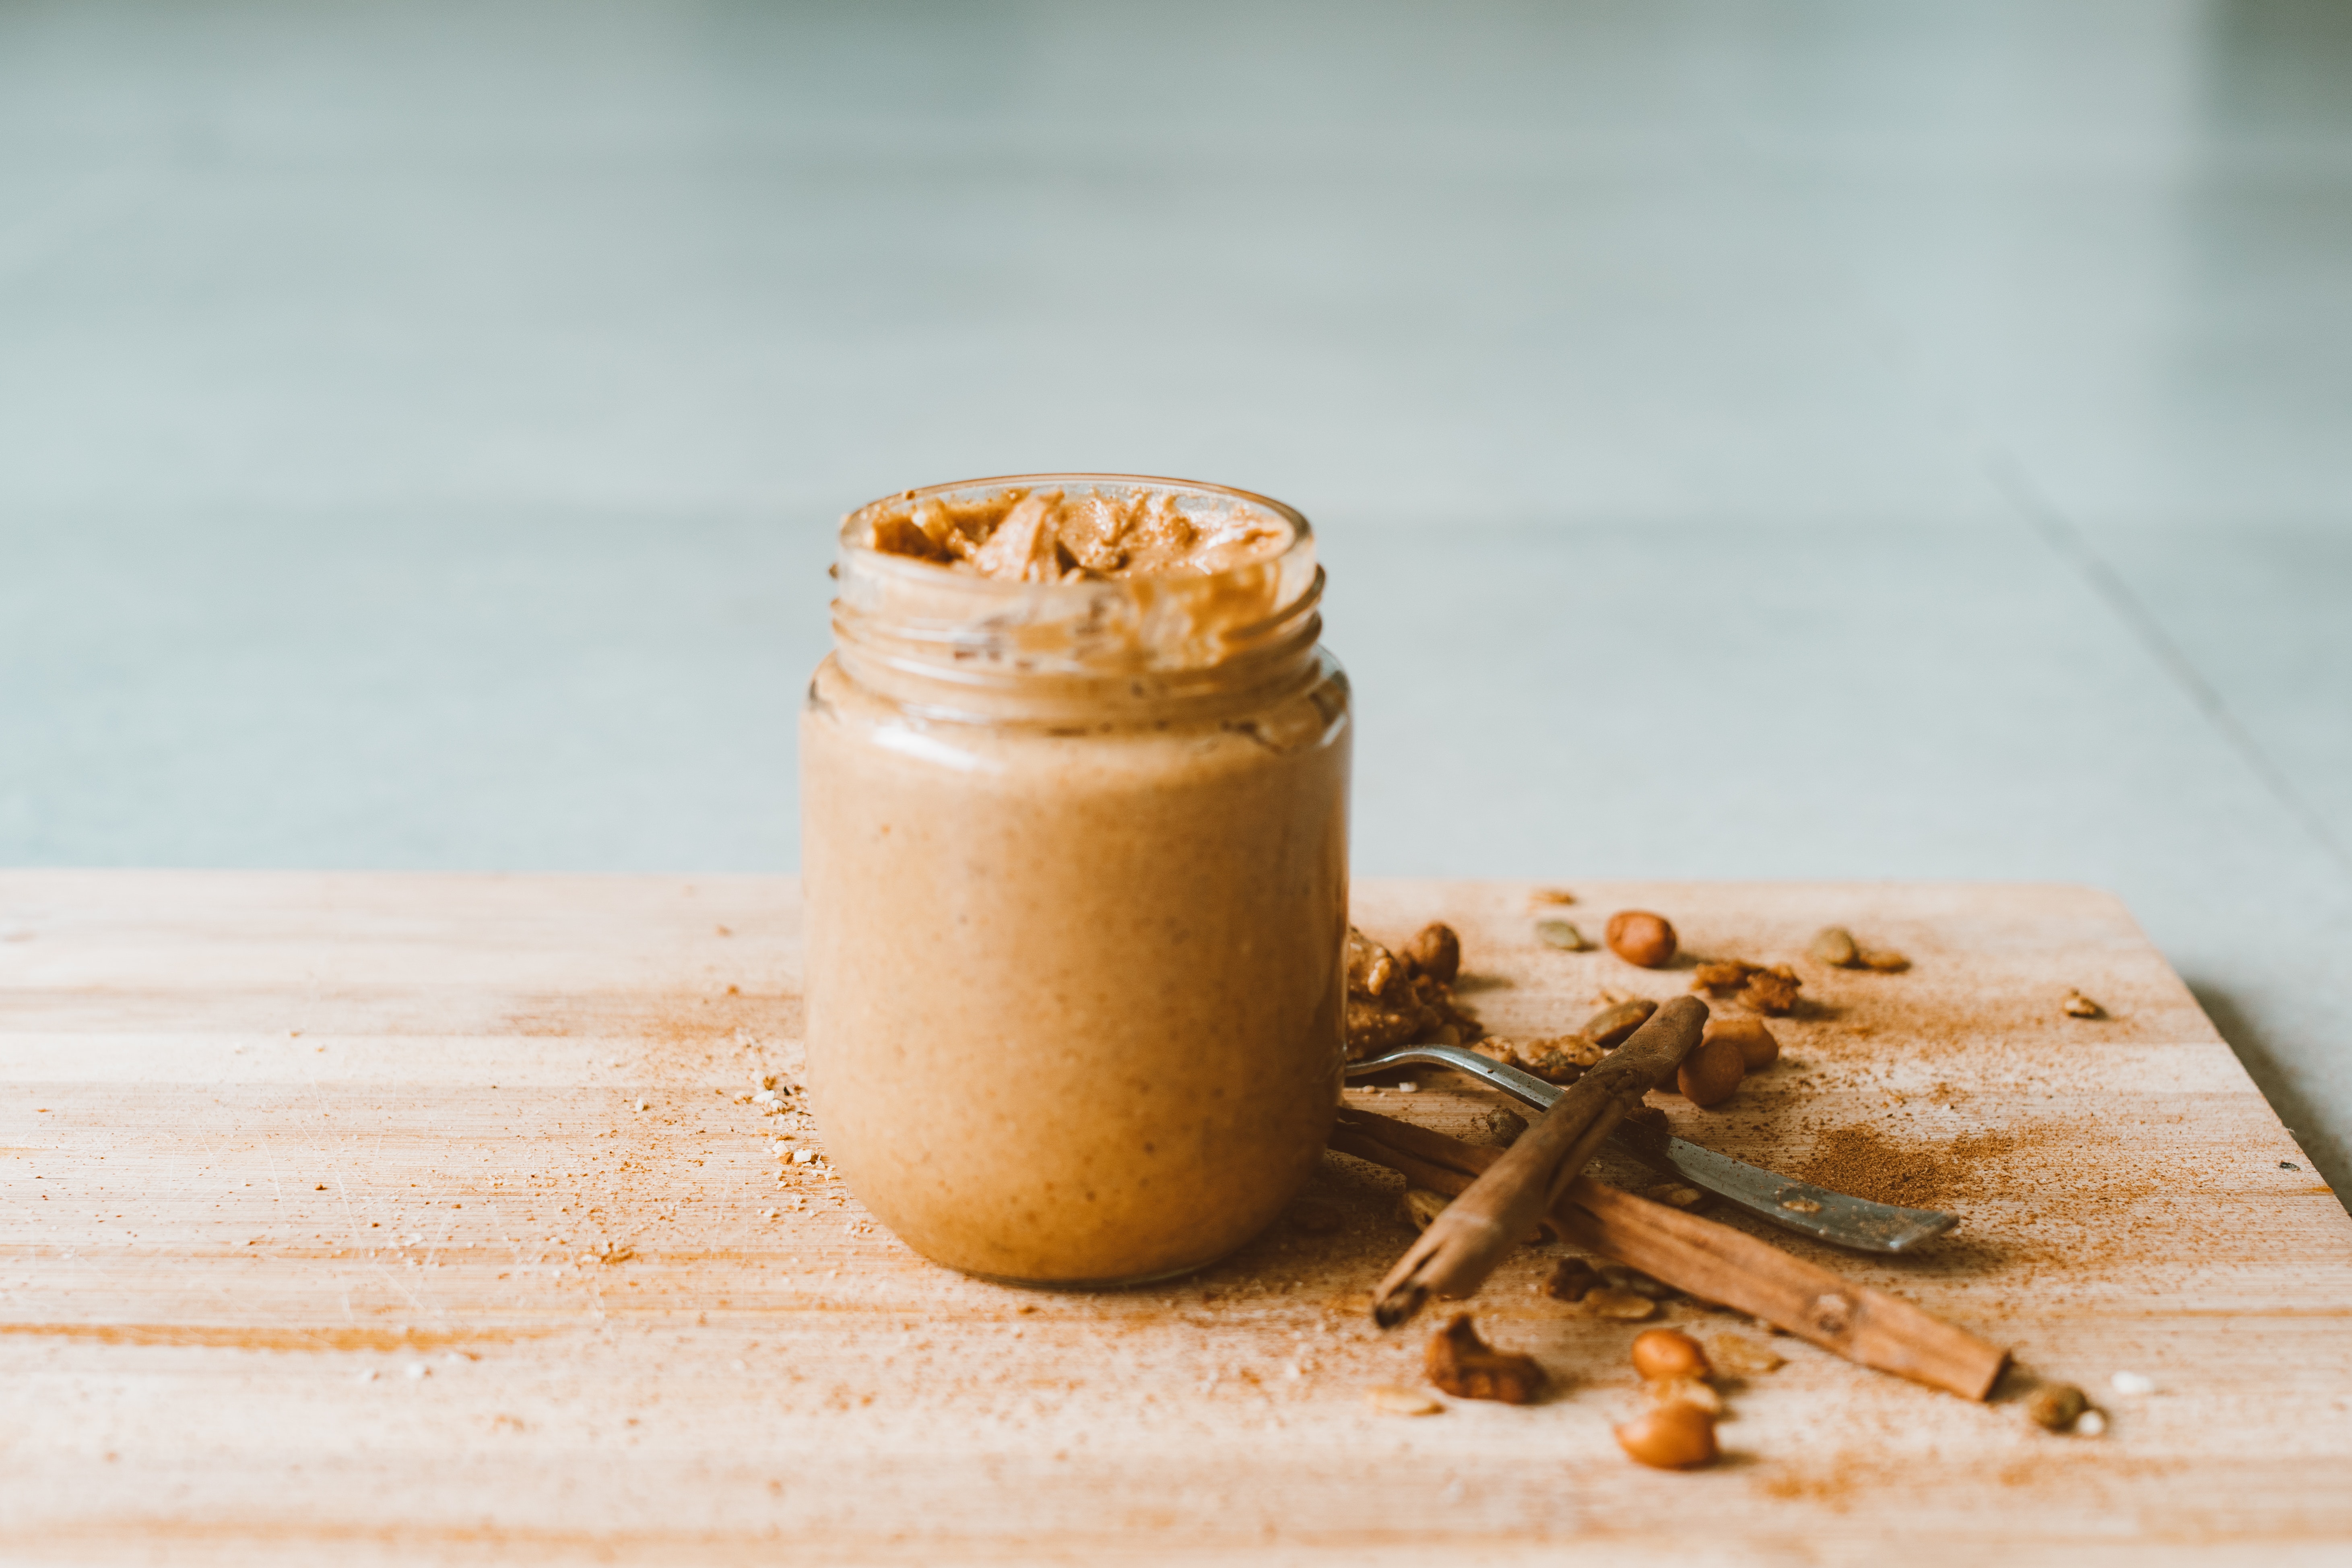 Αυτό το TikTok Peanut Butter Jar Hack είναι ένας ιδιοφυής τρόπος για να φτιάξεις σάλτσα από φιστίκι